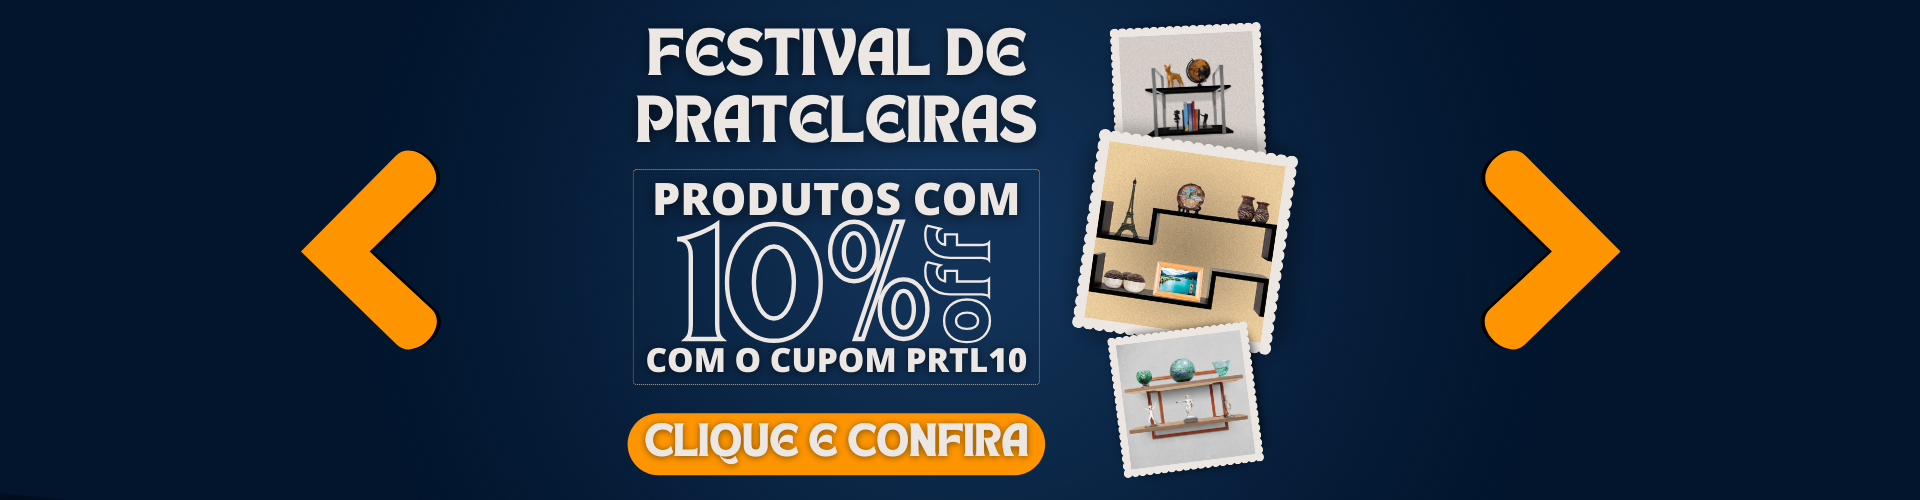 Festival de Prateleiras - Cupom 10%OFF